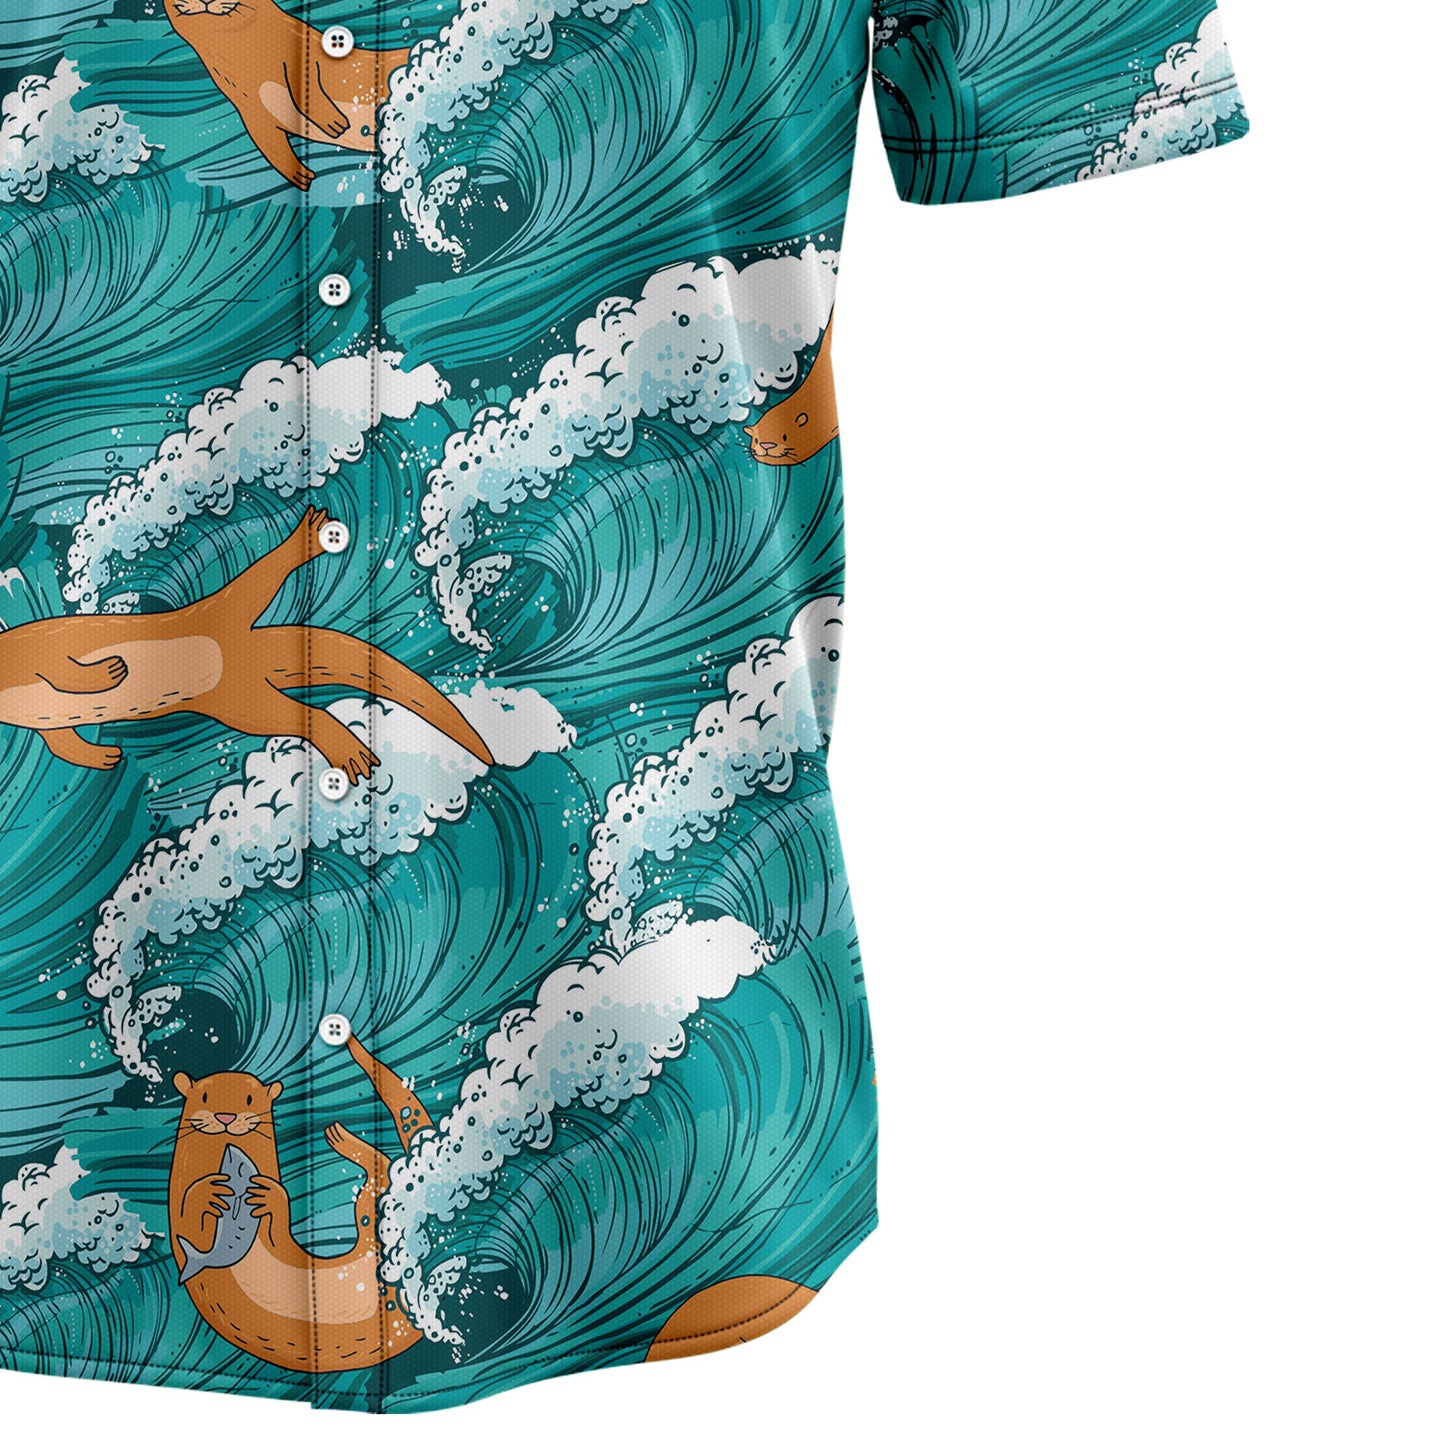 Otter Sea Waves G5730 Hawaiian Shirt